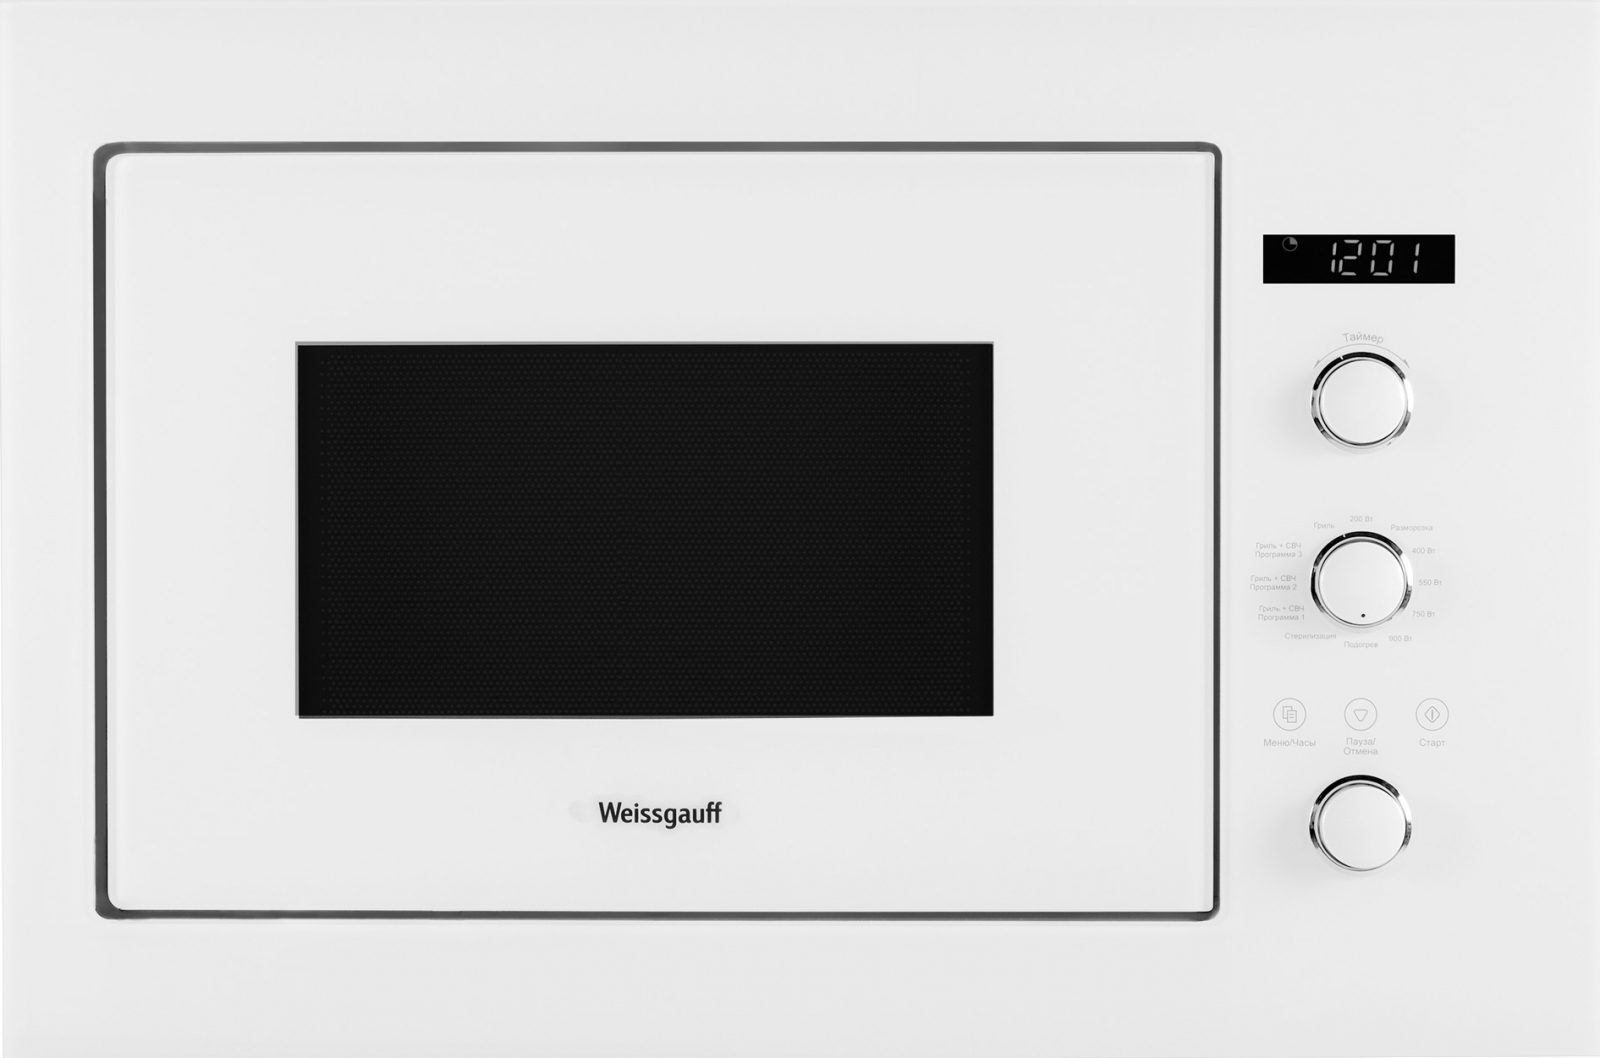 Встраиваемая микроволновая печь Weissgauff HMT-252 White встраиваемая микроволновая печь weissgauff hmt 252 white